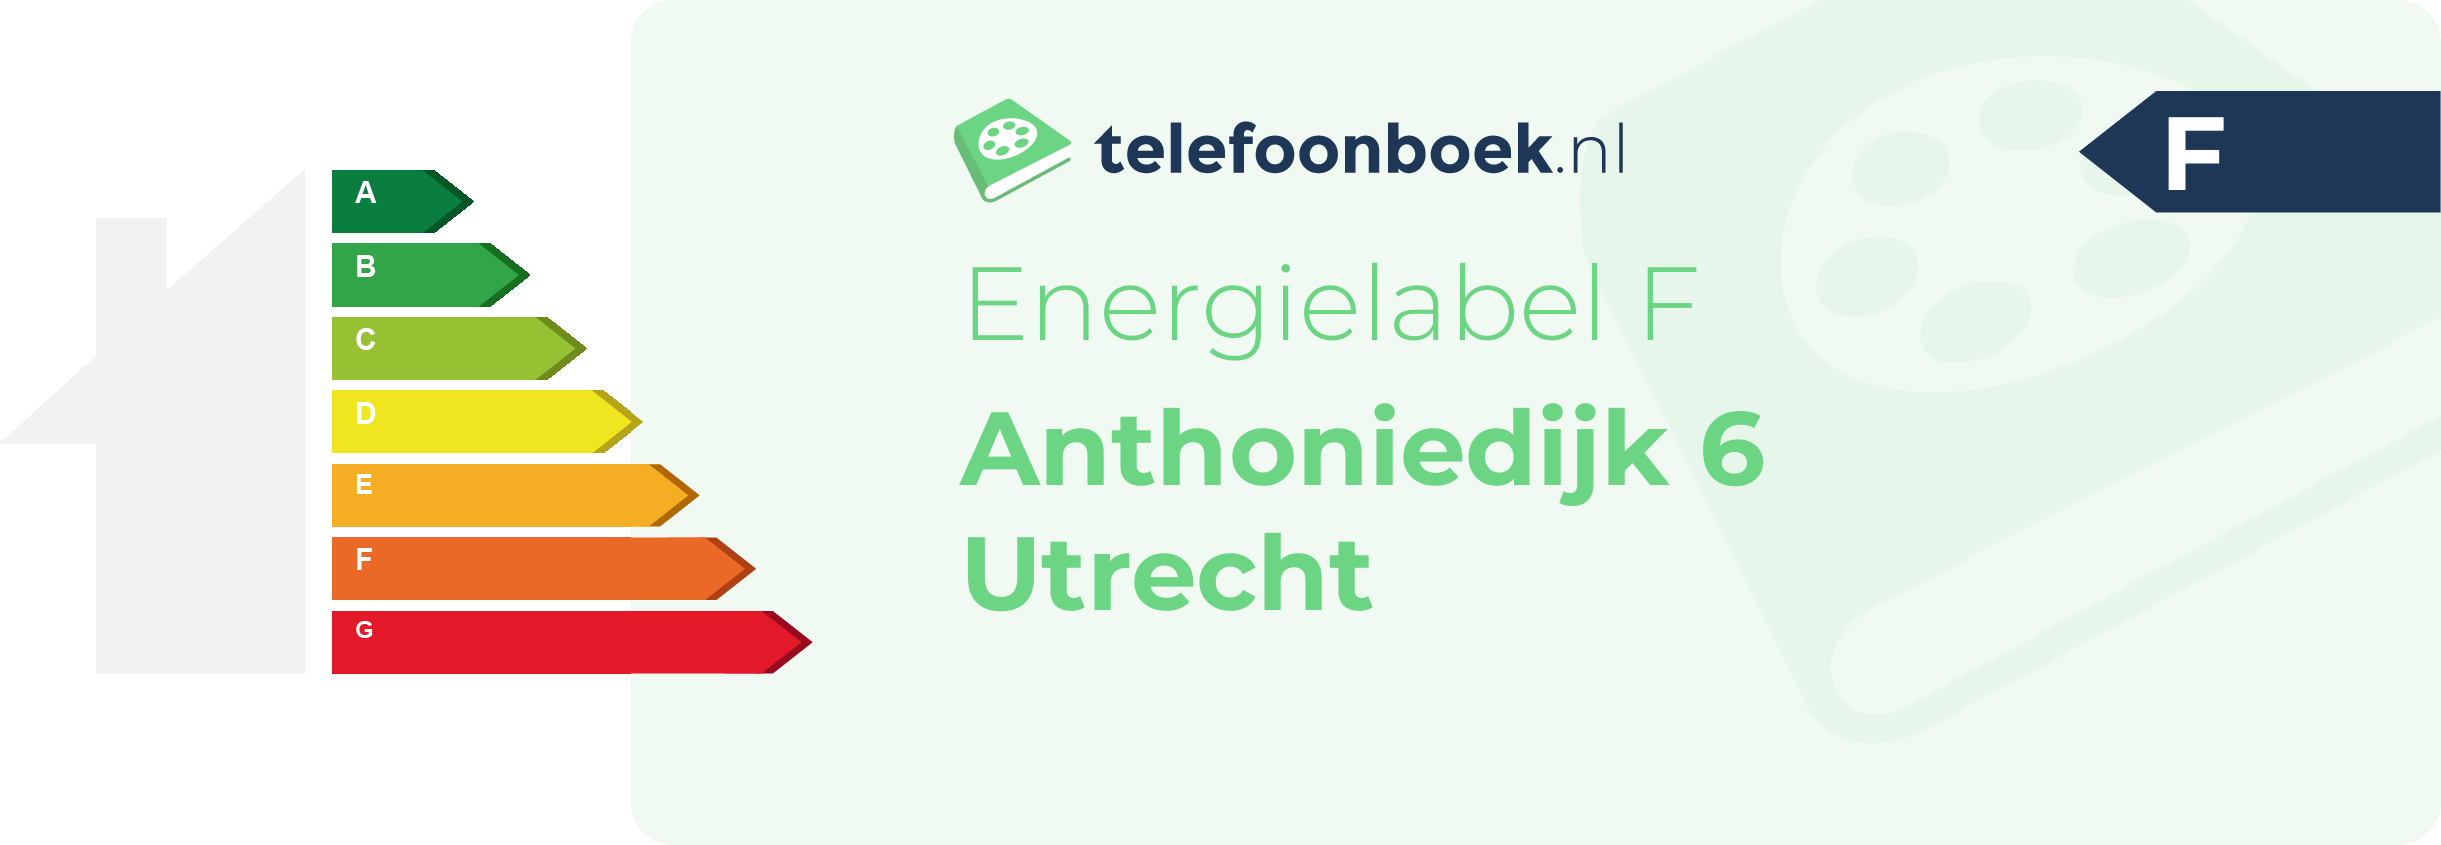 Energielabel Anthoniedijk 6 Utrecht